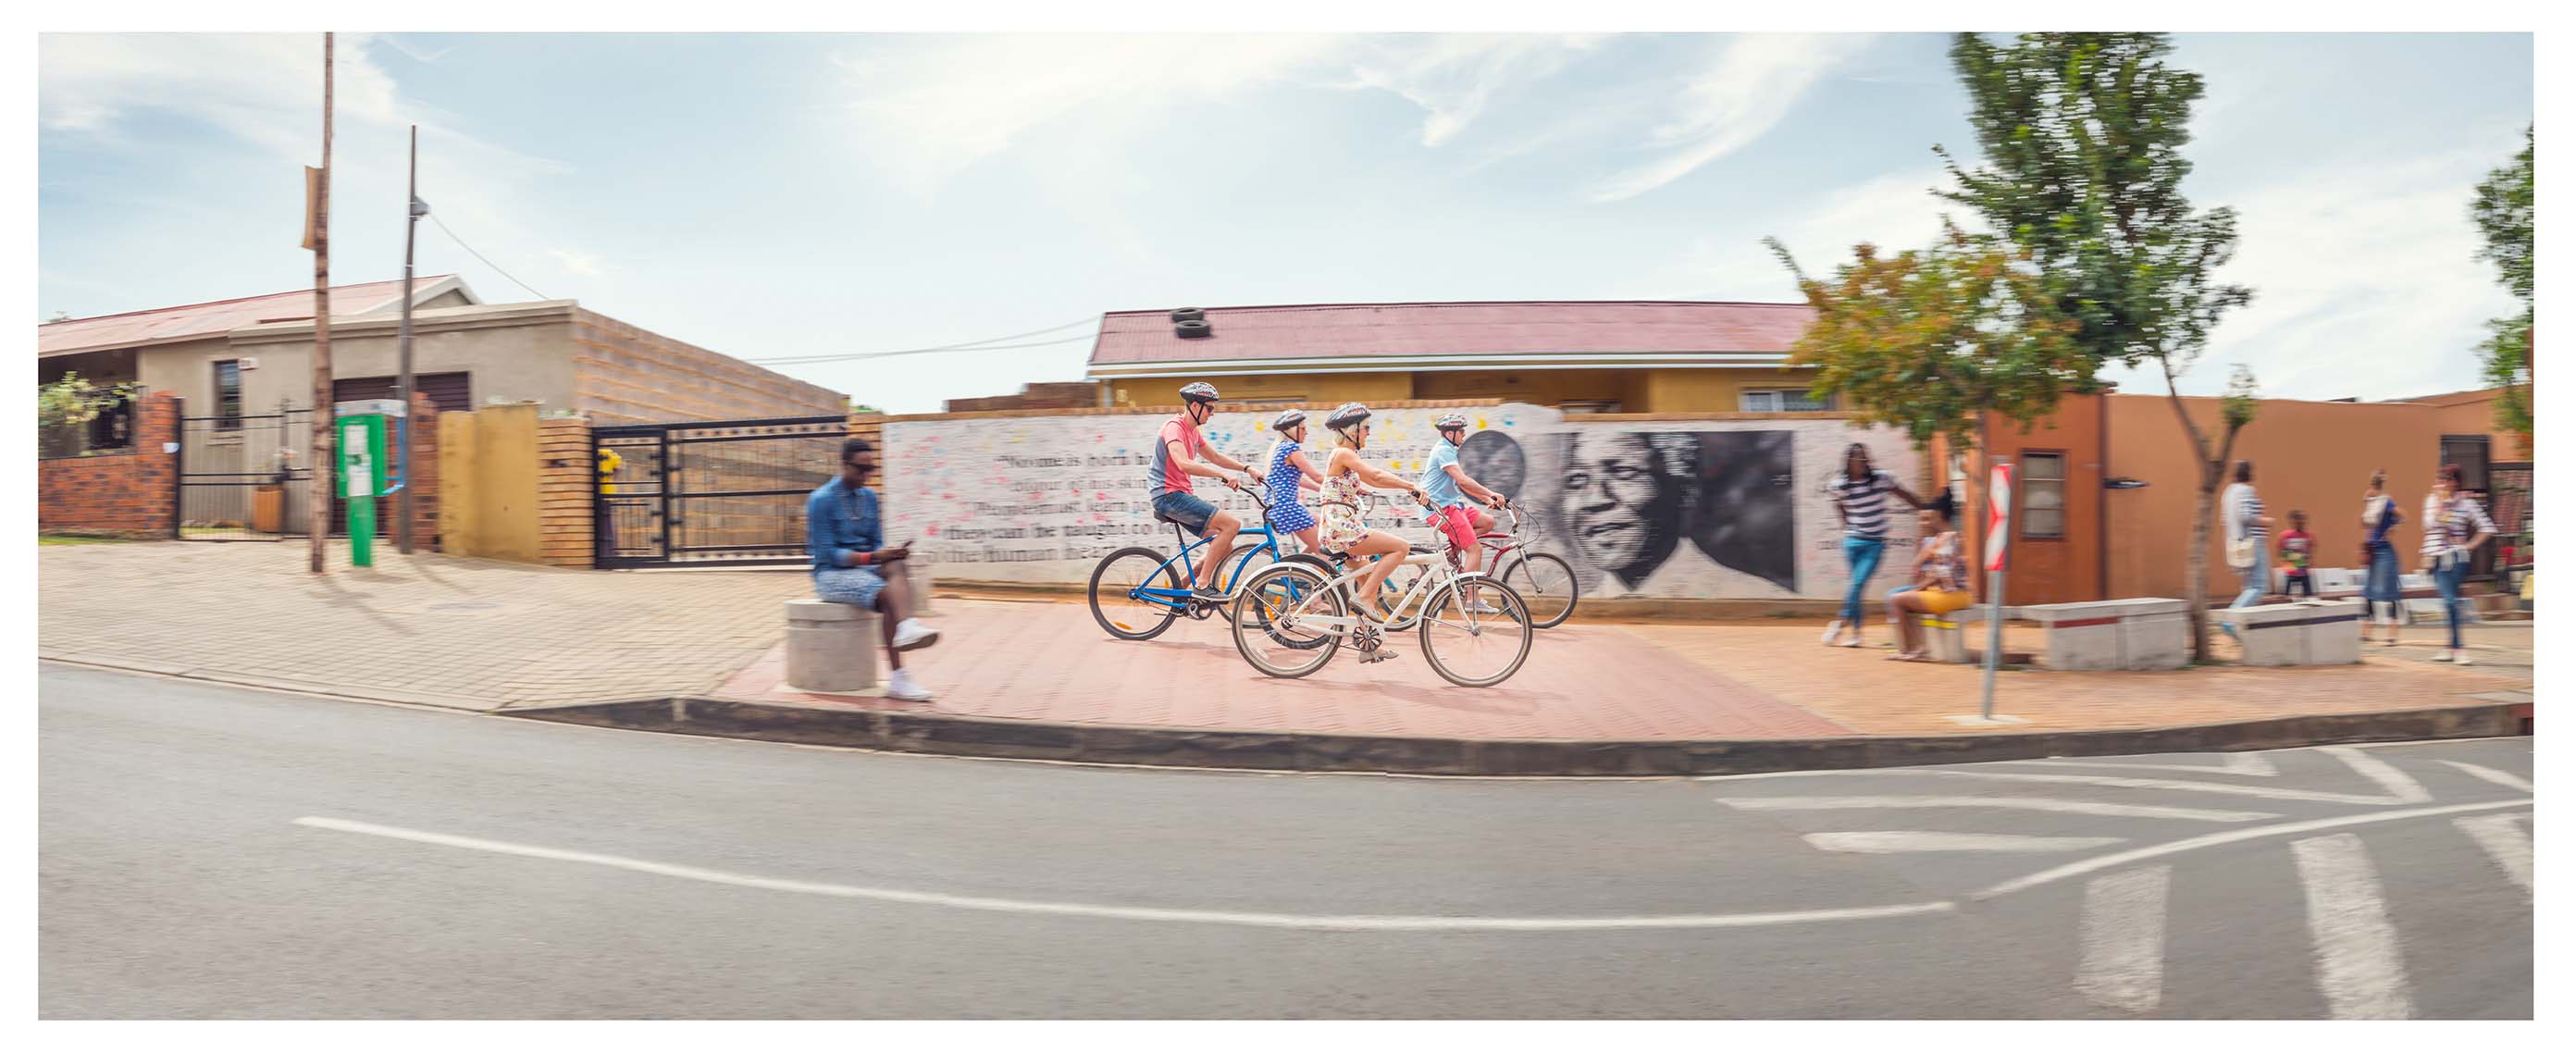 Mural em Soweto - Foto South Africa Tourism.jpg